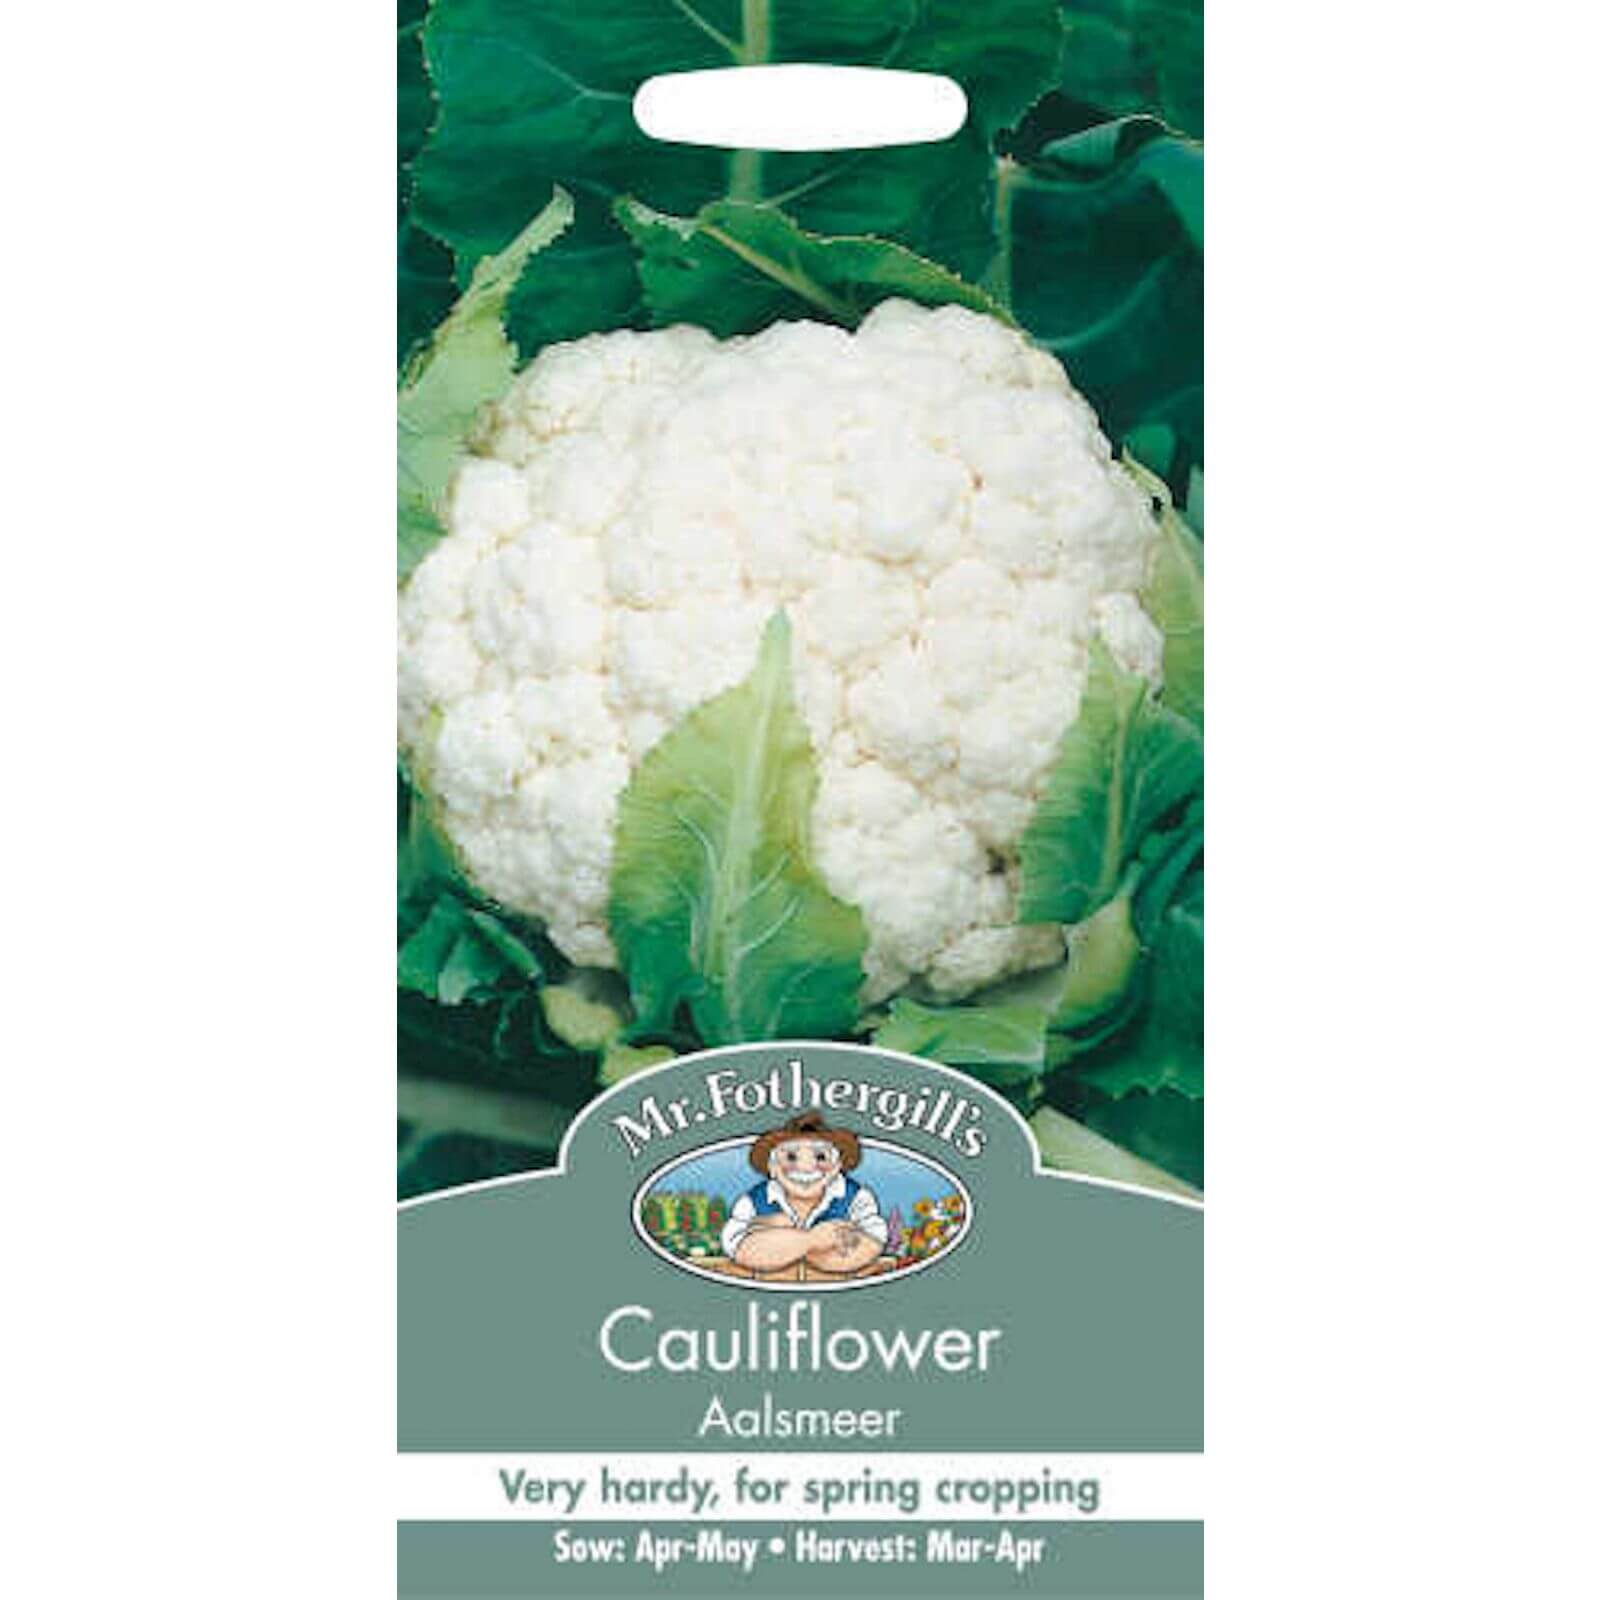 Mr. Fothergill's Cauliflower Aalsmeer Seeds